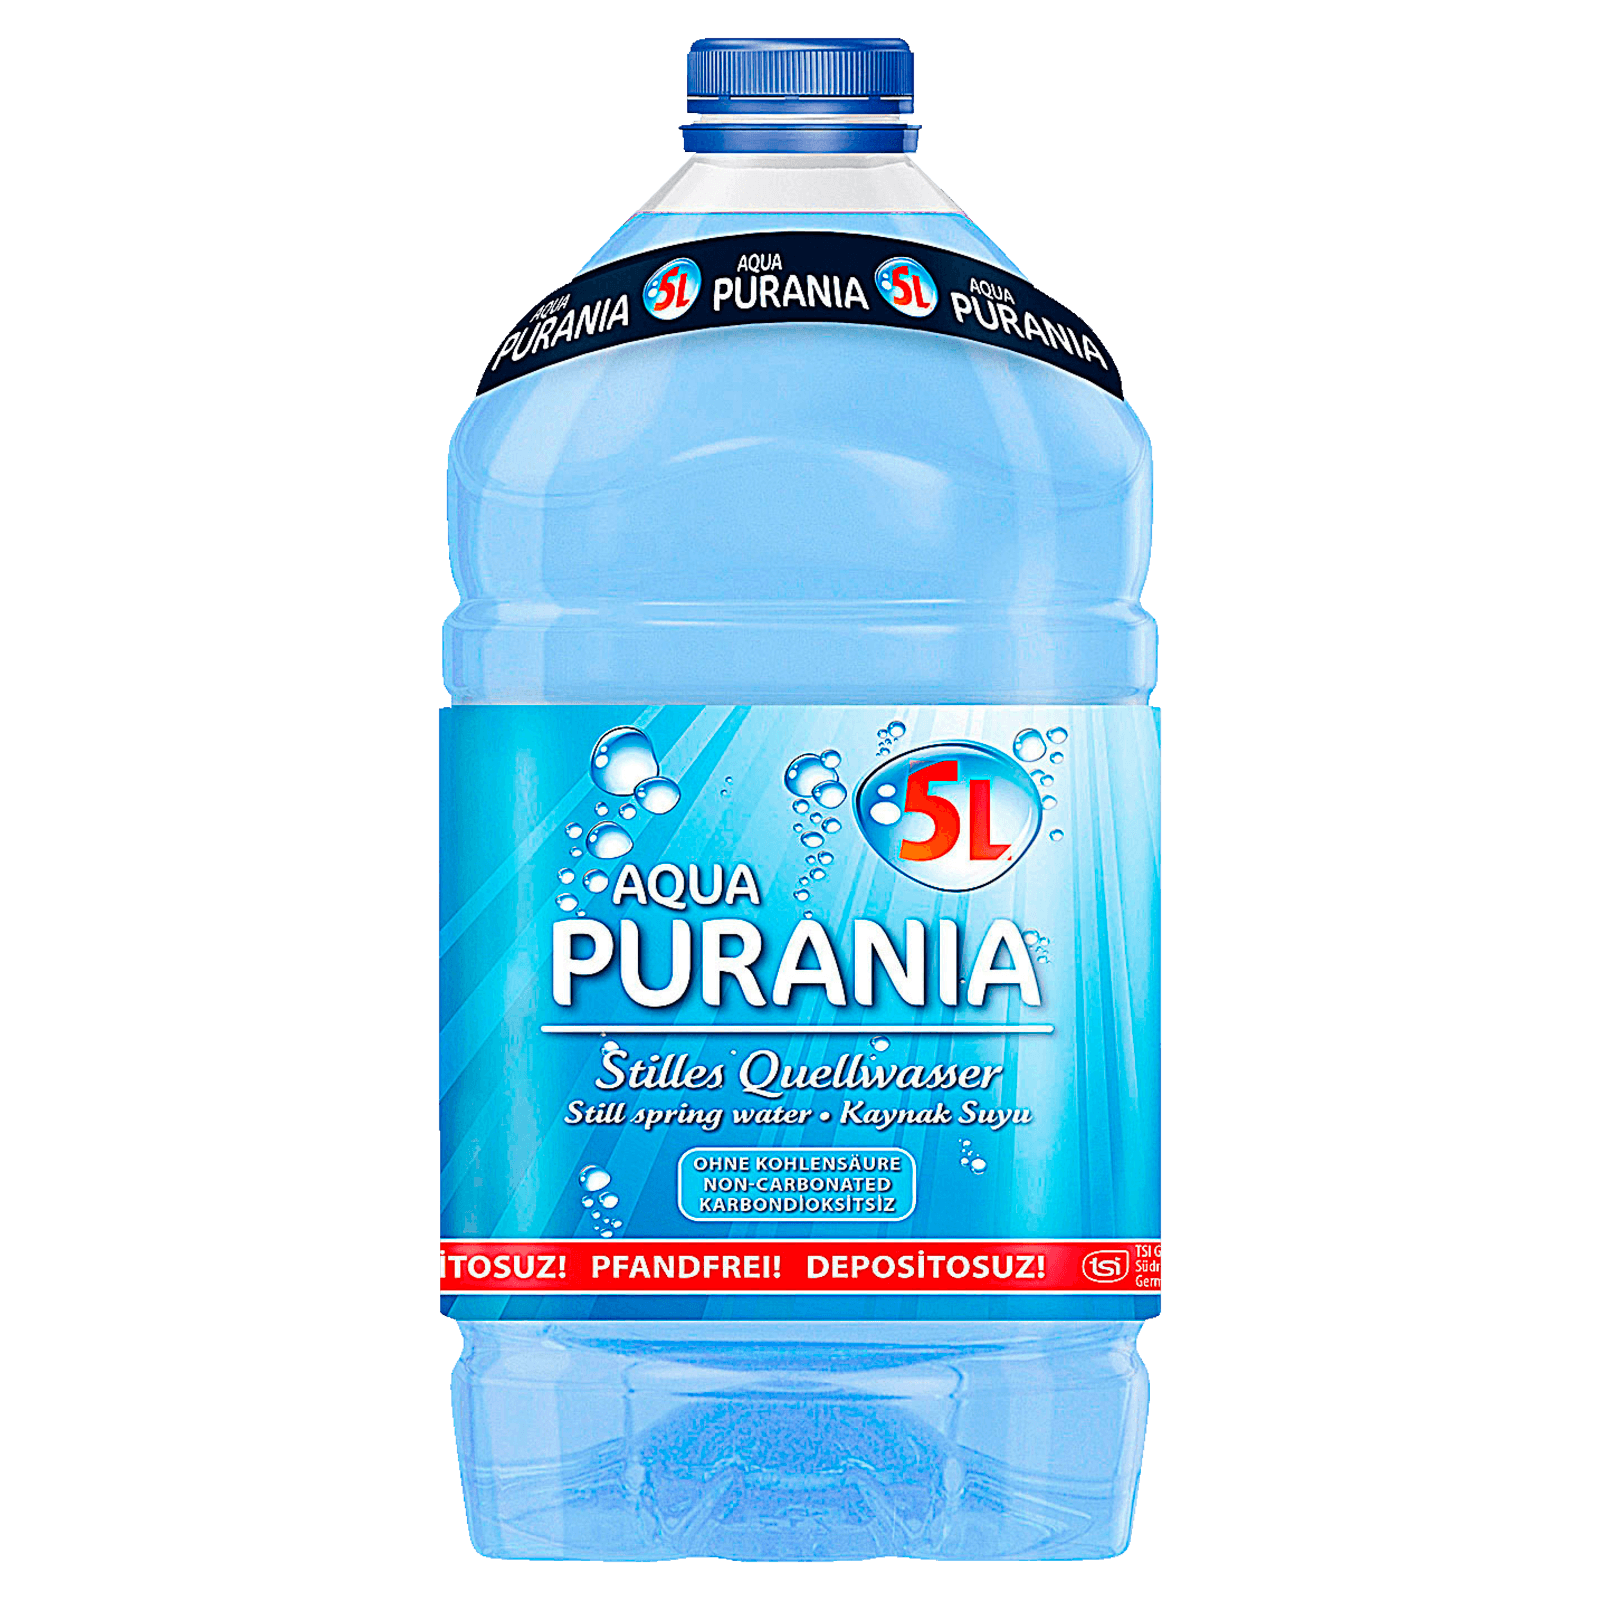 Aqua Purania Mineralwasser Still 5l bei REWE online bestellen!